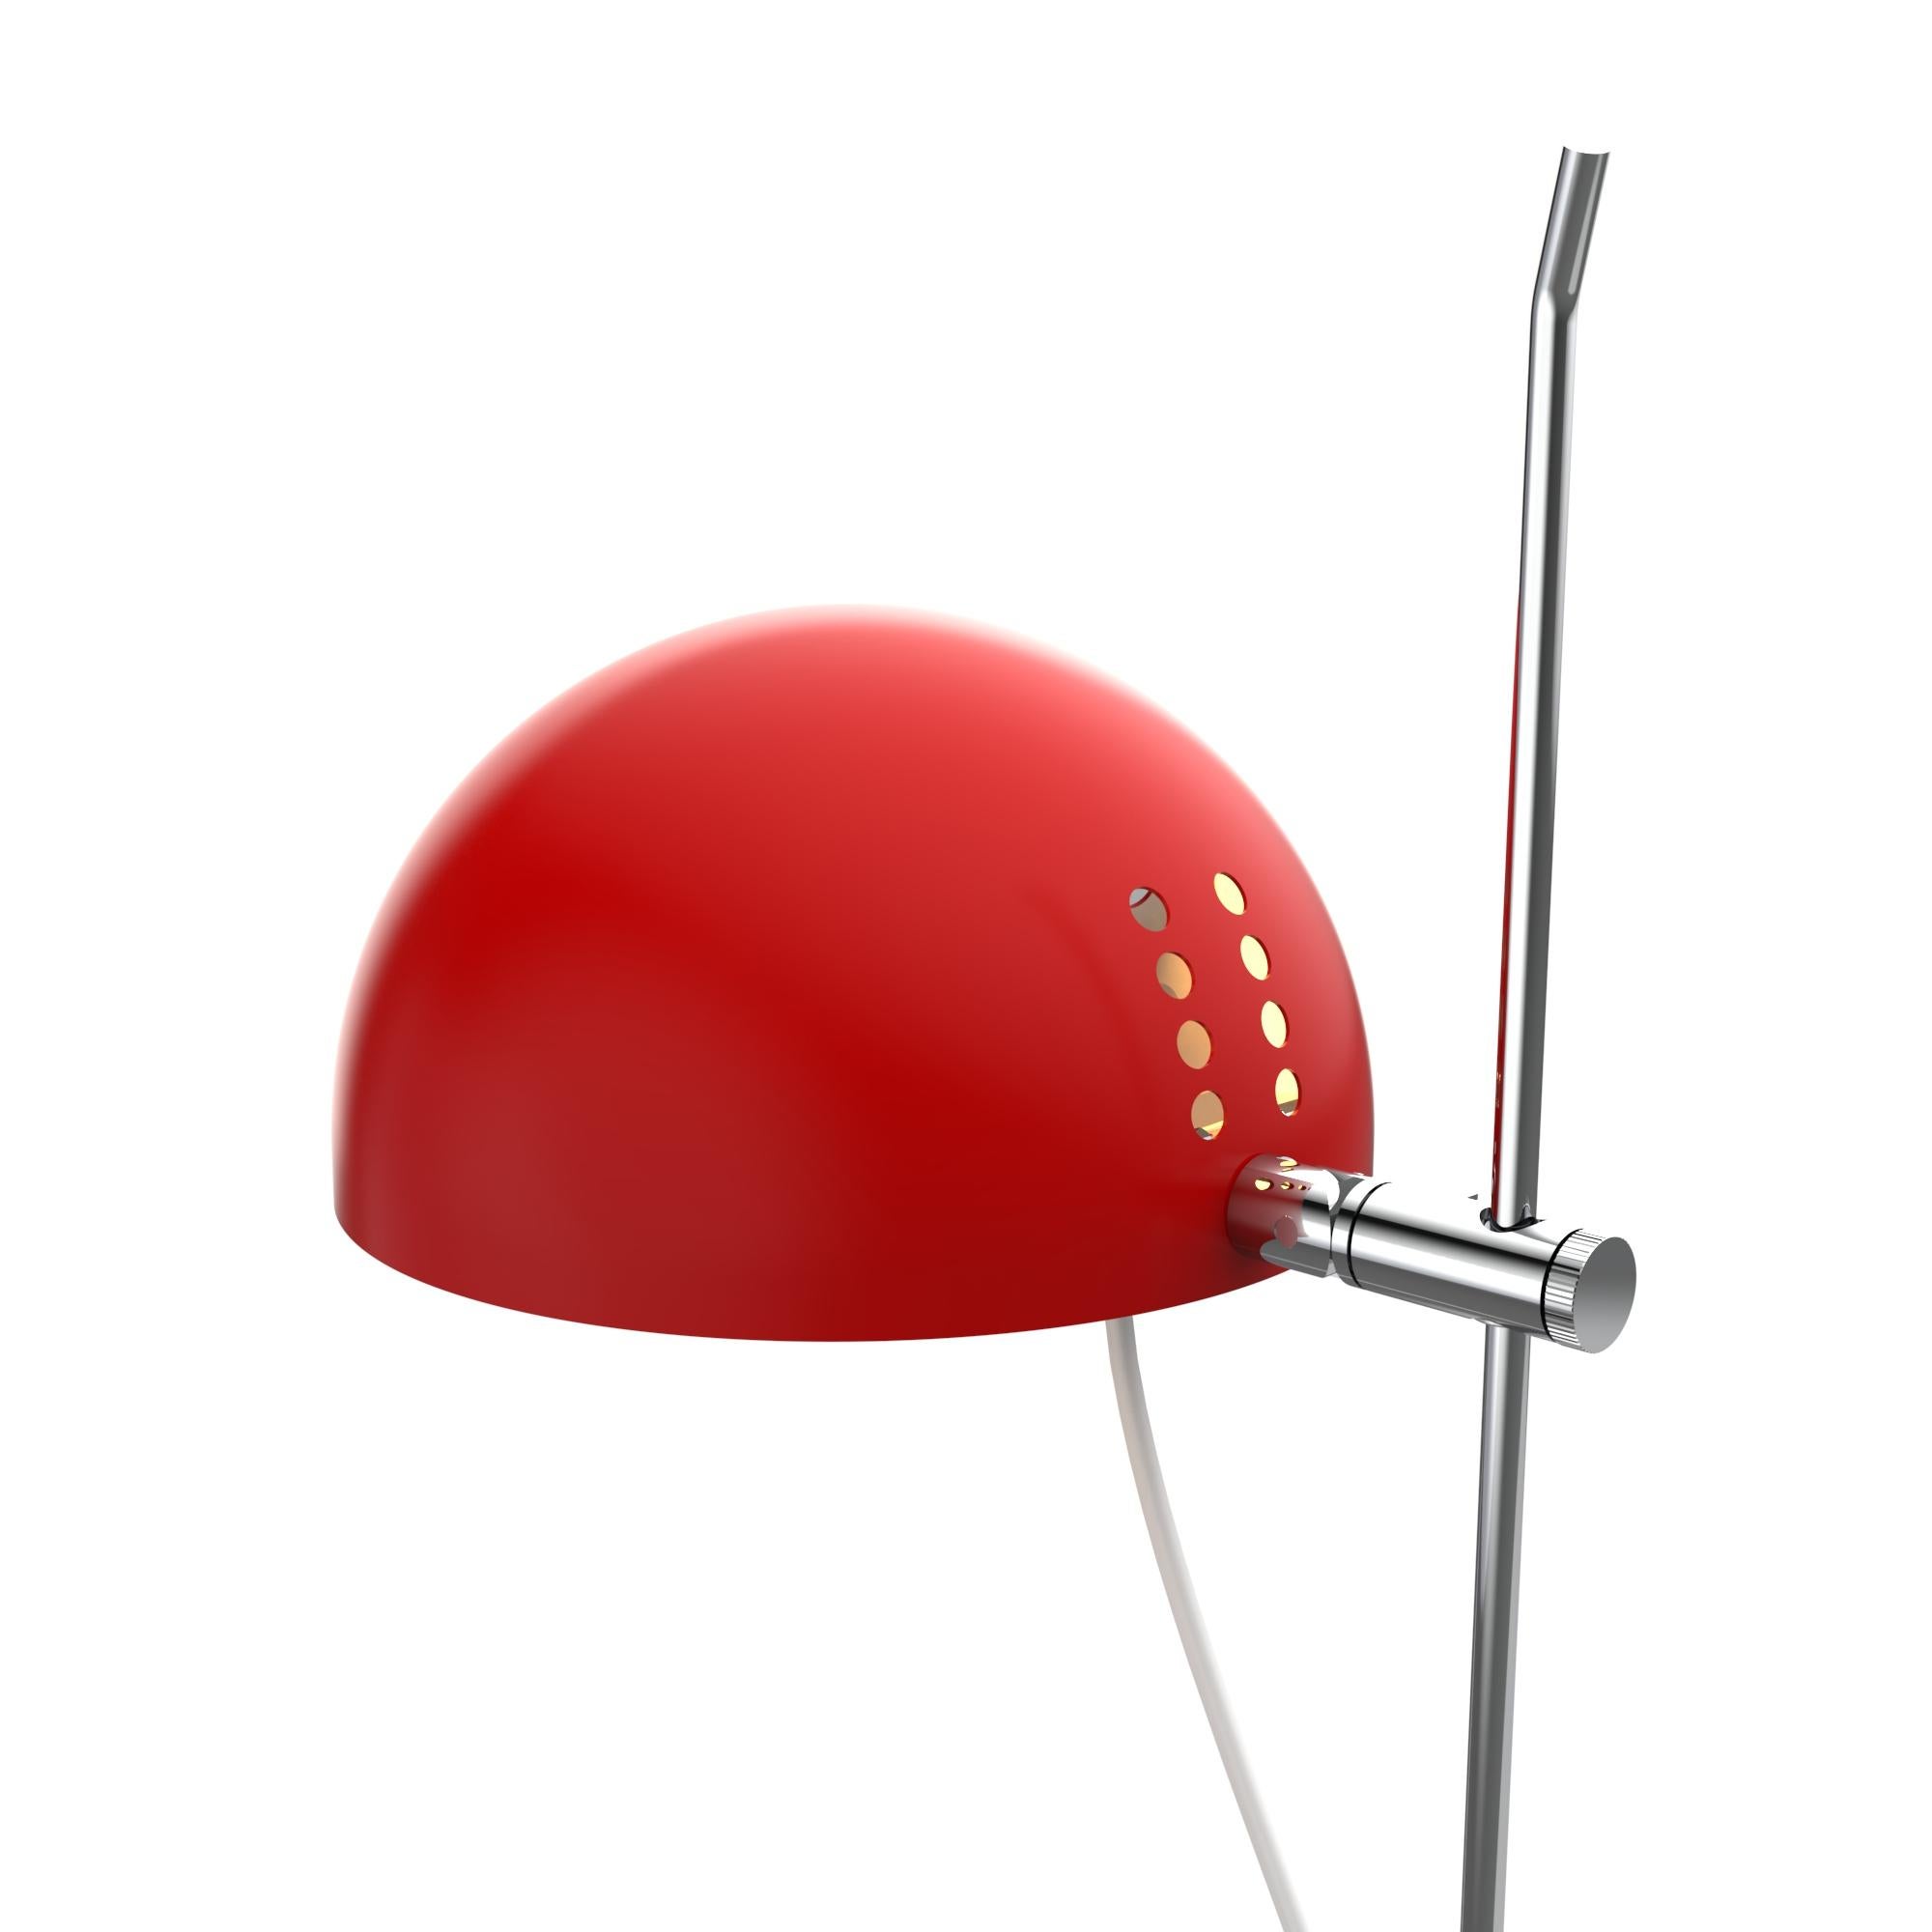 Alain Richard 'A22F' Quastenlampe in Rot für Disderot.

Diese neu produzierte, nummerierte Auflage aus rot lackiertem Metall mit eingeschlossenem Echtheitszertifikat wird in Frankreich von Disderot mit vielen der kleinen Herstellungstechniken und